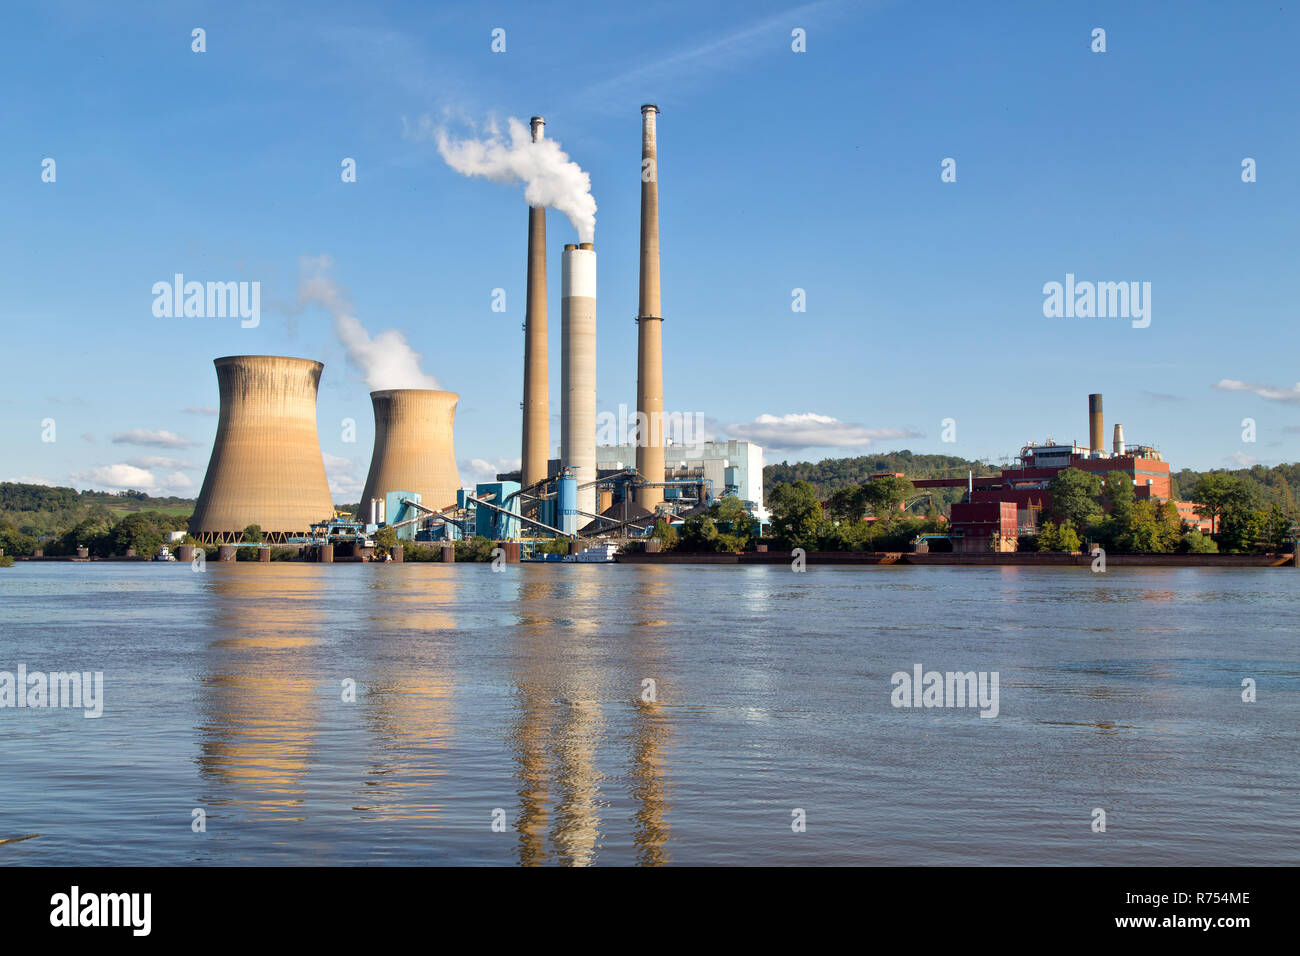 Pleasants Power Station, d'exploitation 1,3 gigawatt-centrale de charbon, situé sur la rivière Ohio, Willow Island, près de Belmont. Banque D'Images